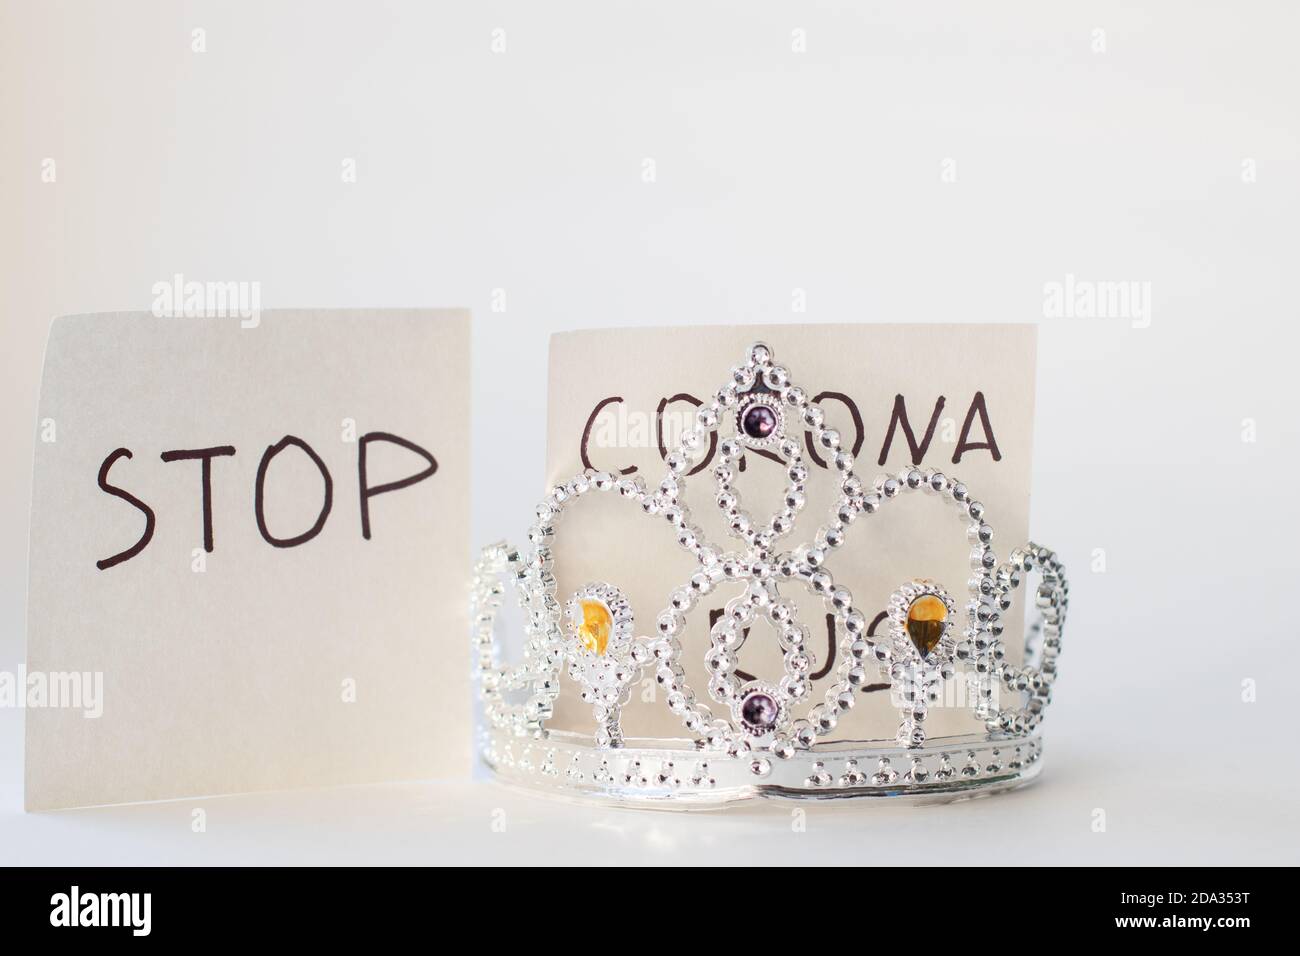 Texte STOP CORONA et modèle de couronne. Concept de coronavirus. COVID-19. Nouveau coronavirus 2019-nCoV Banque D'Images